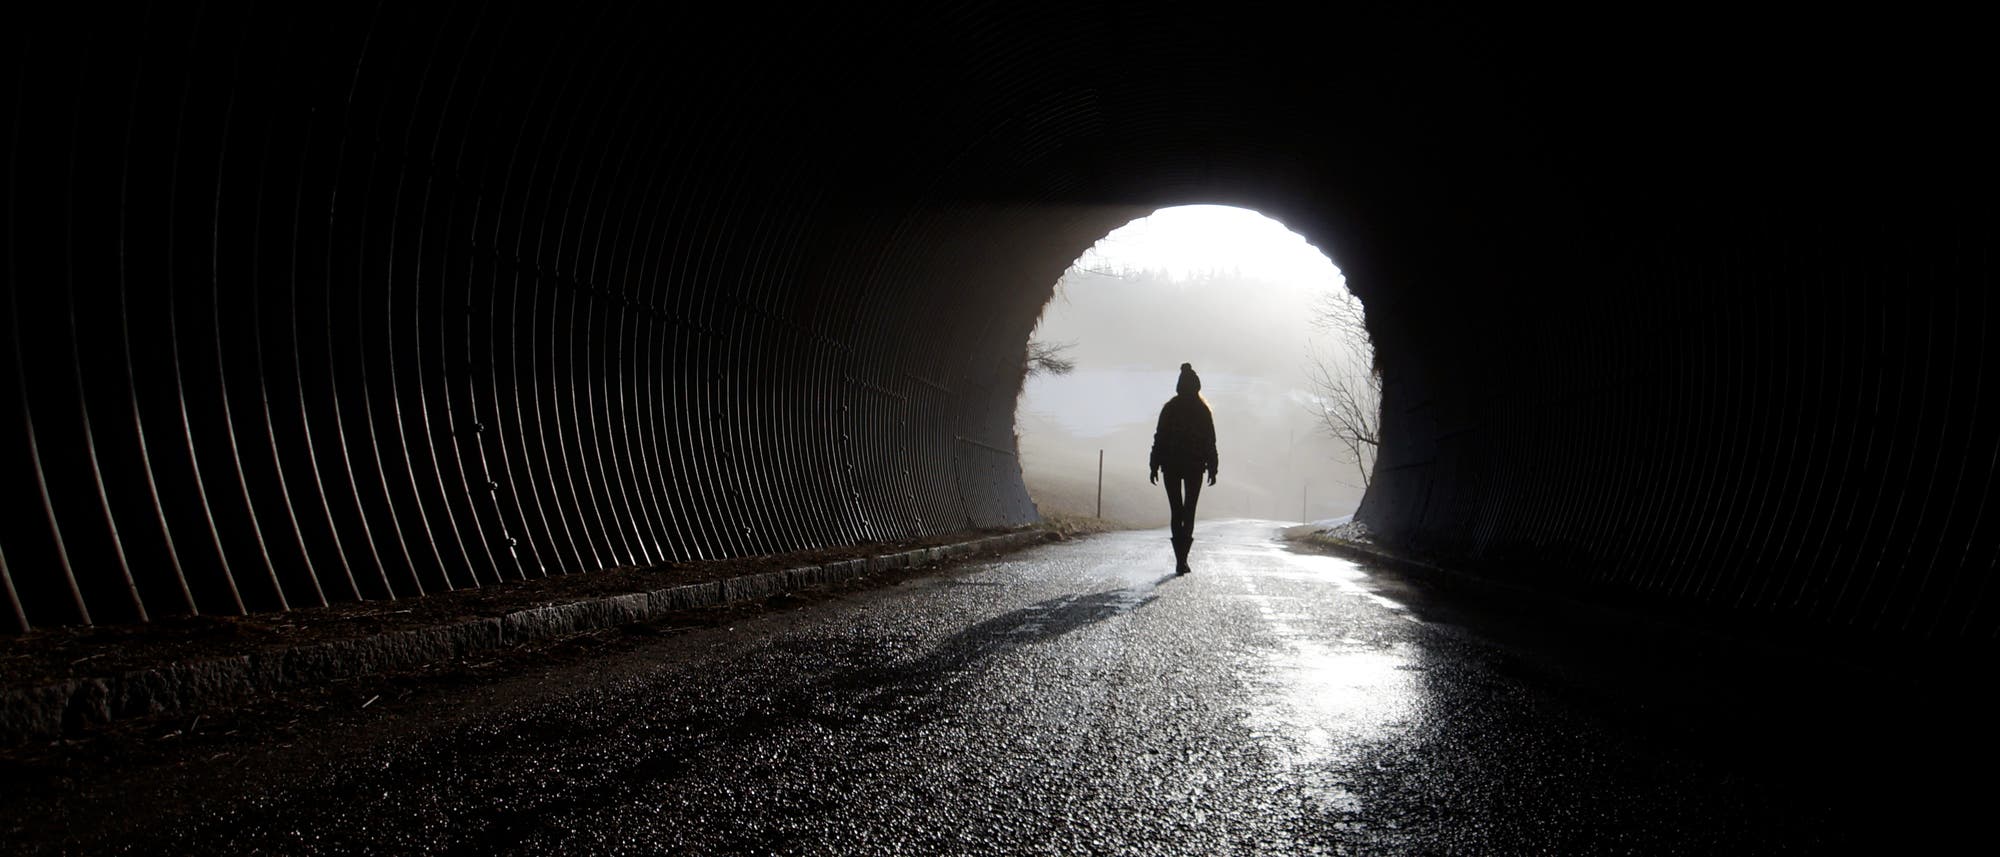 Die Silhouette einer Frau, die sich dem Ende eines dunklen Tunnels nähert